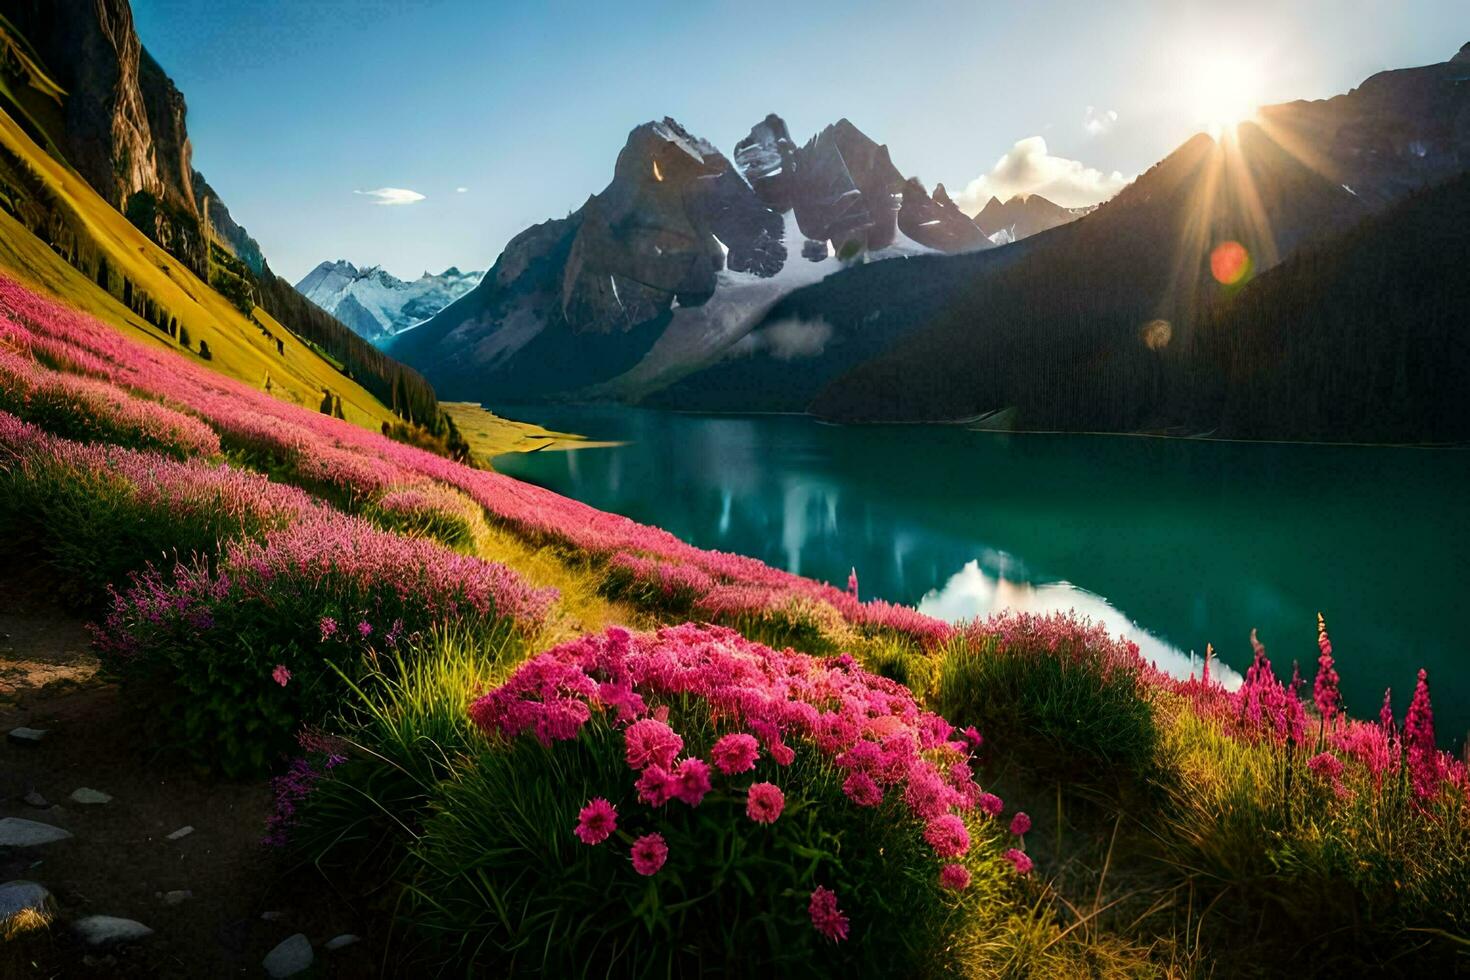 de zon schijnt Aan de bergen en bloemen in de voorgrond. ai-gegenereerd foto